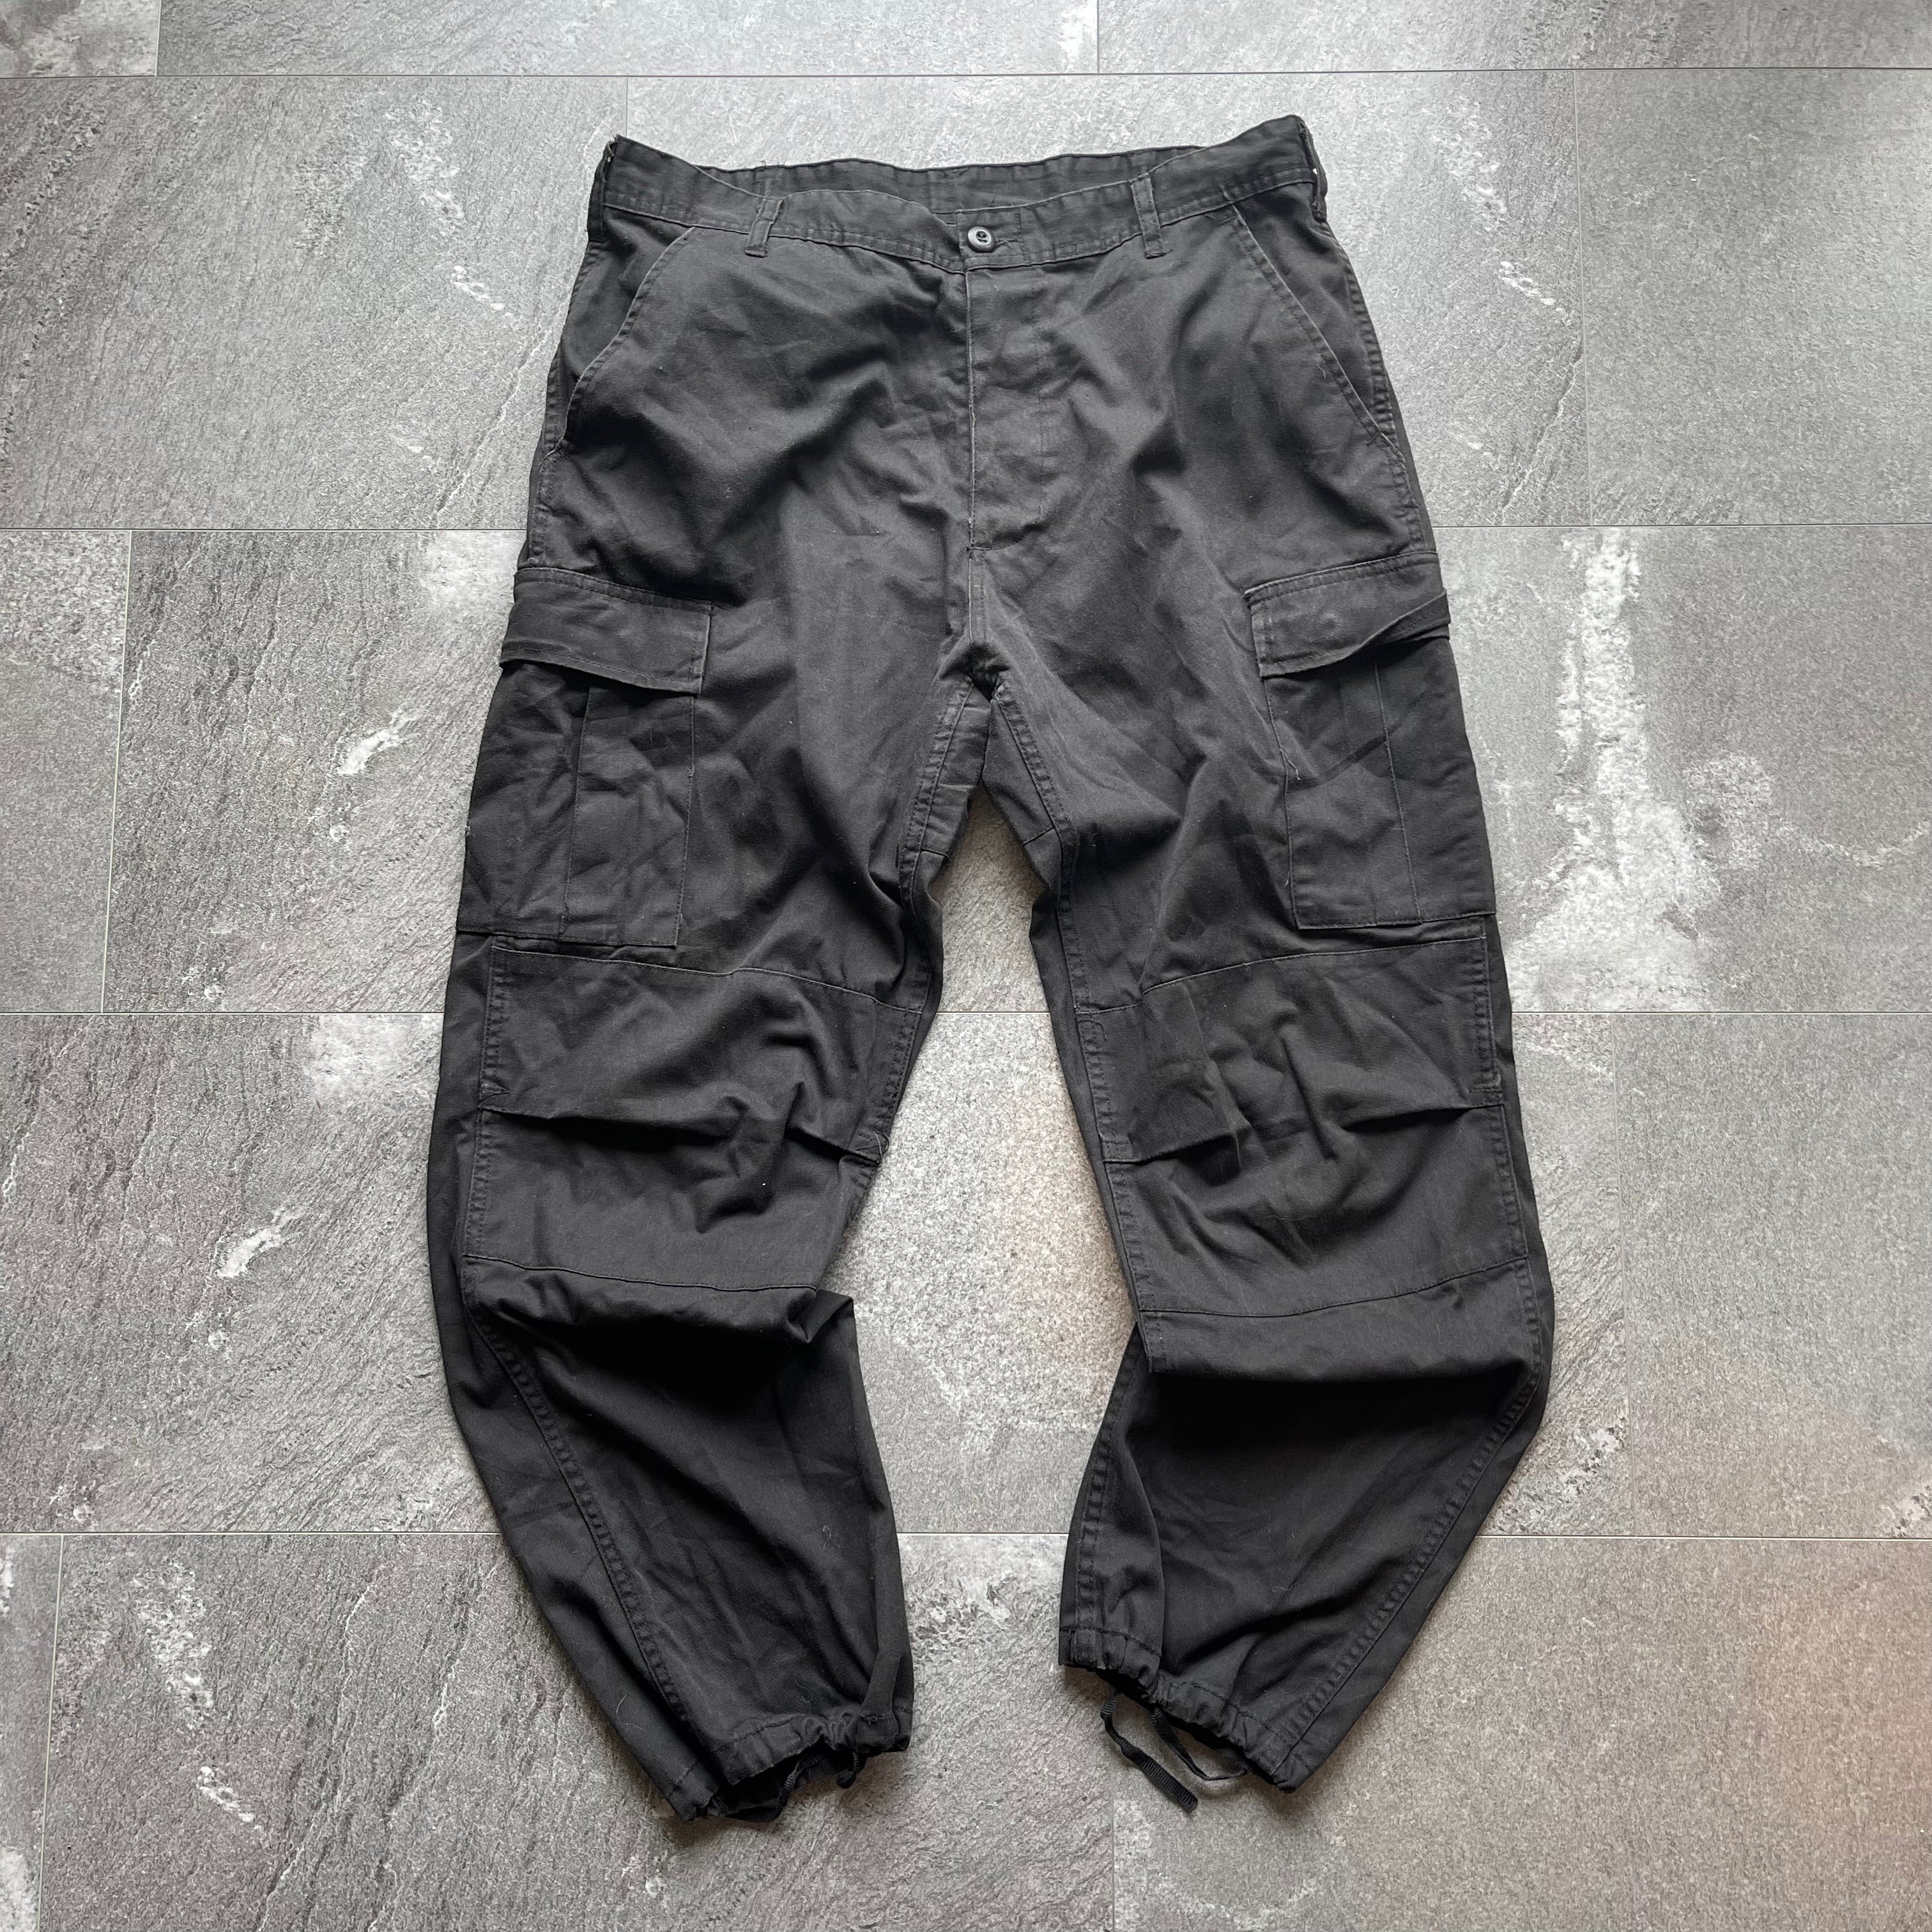 Black Cargo Pants - Size L